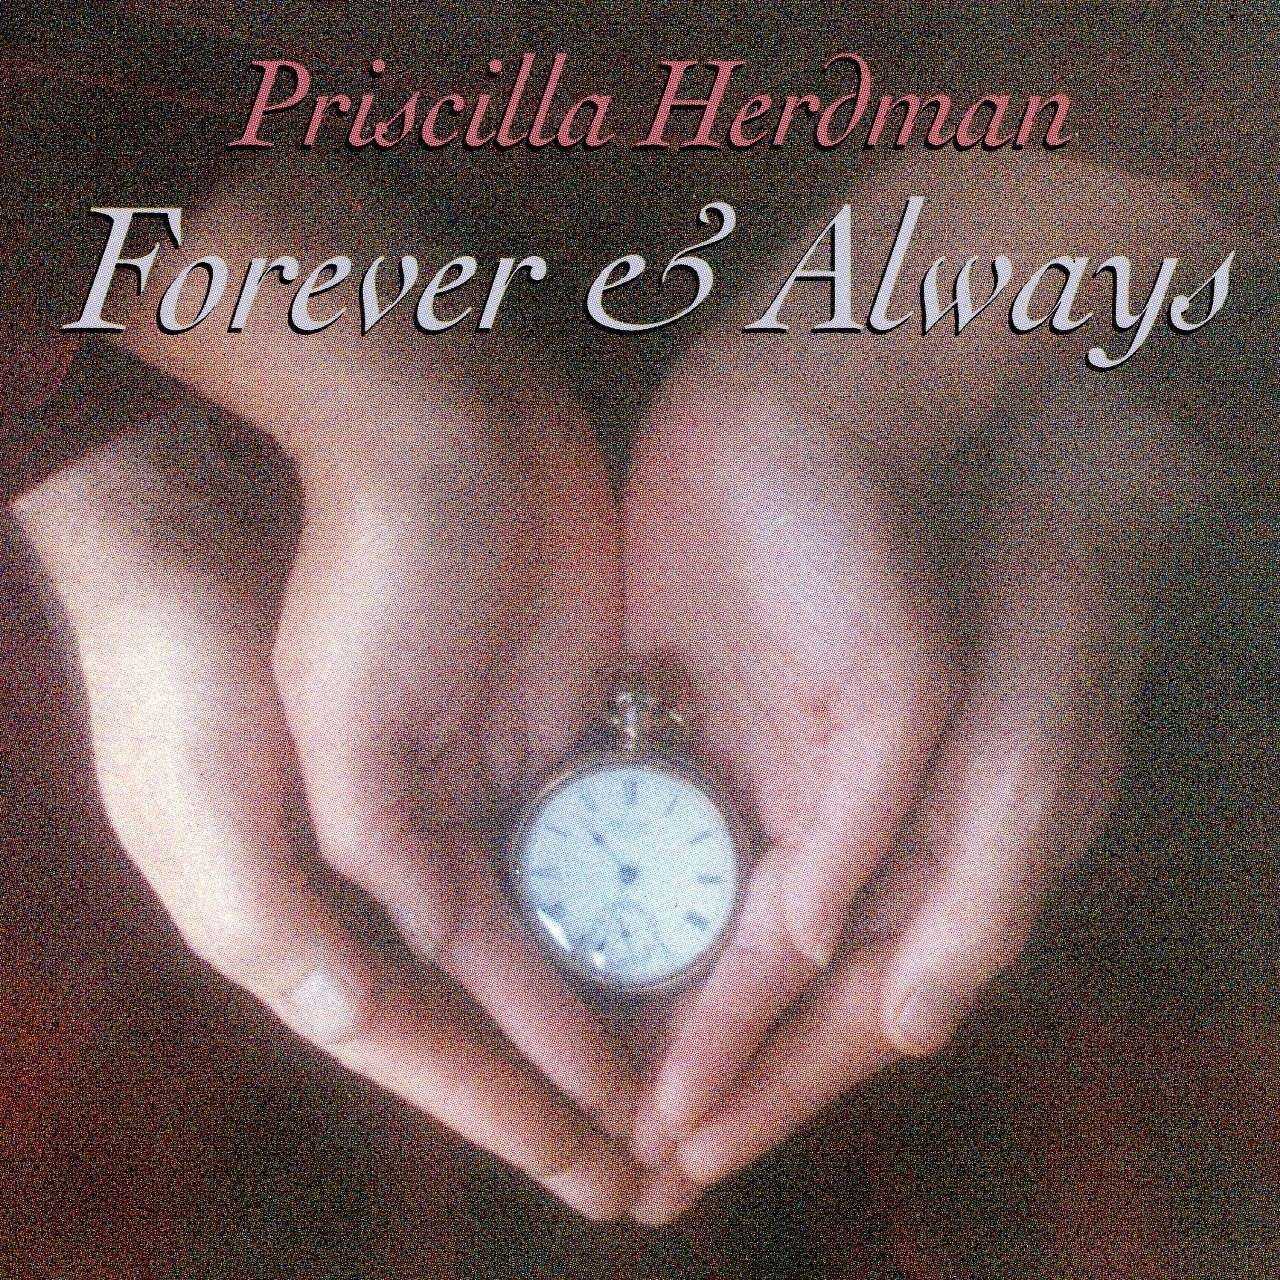 Priscilla Herdman - Forever & Always cover album